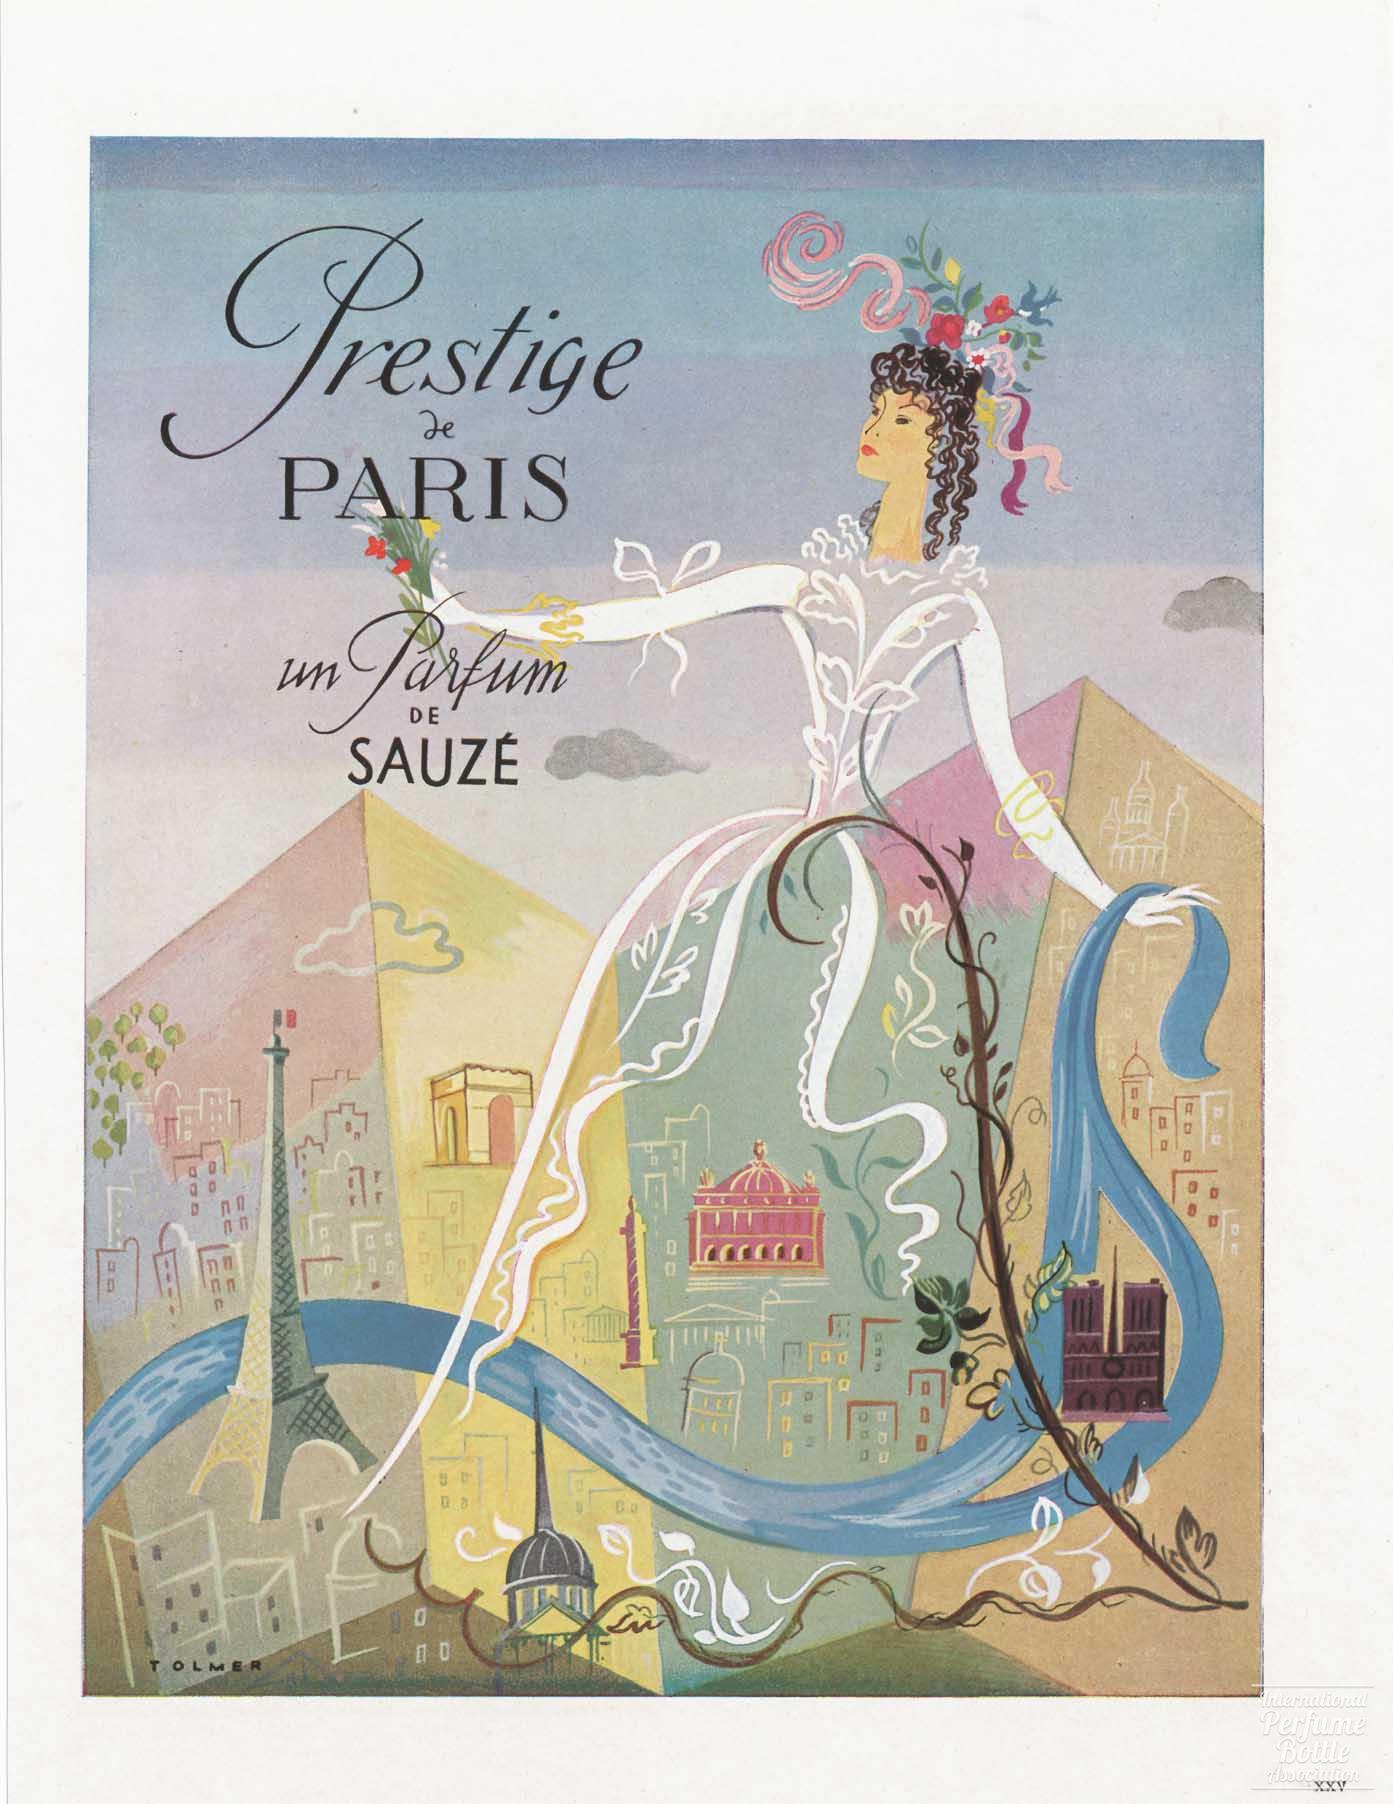 "Prestige de Paris" by Sauzé Fréres Advertisement - 1947